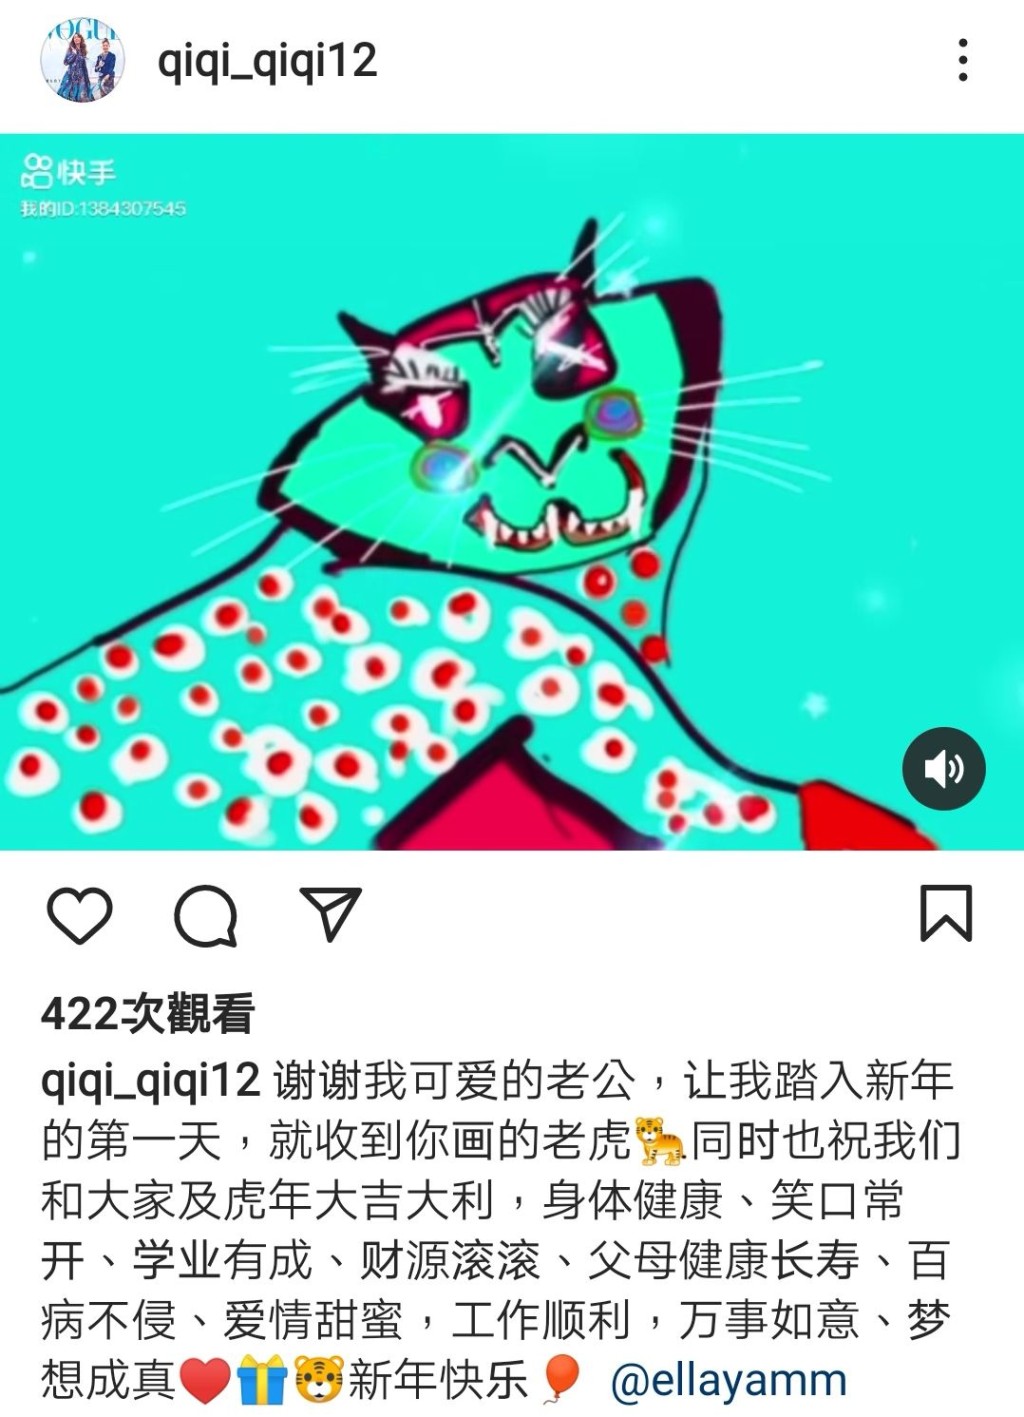 新年禮物 華哥為咗冧妻繪畫嘅老虎圖，畫功唔錯。